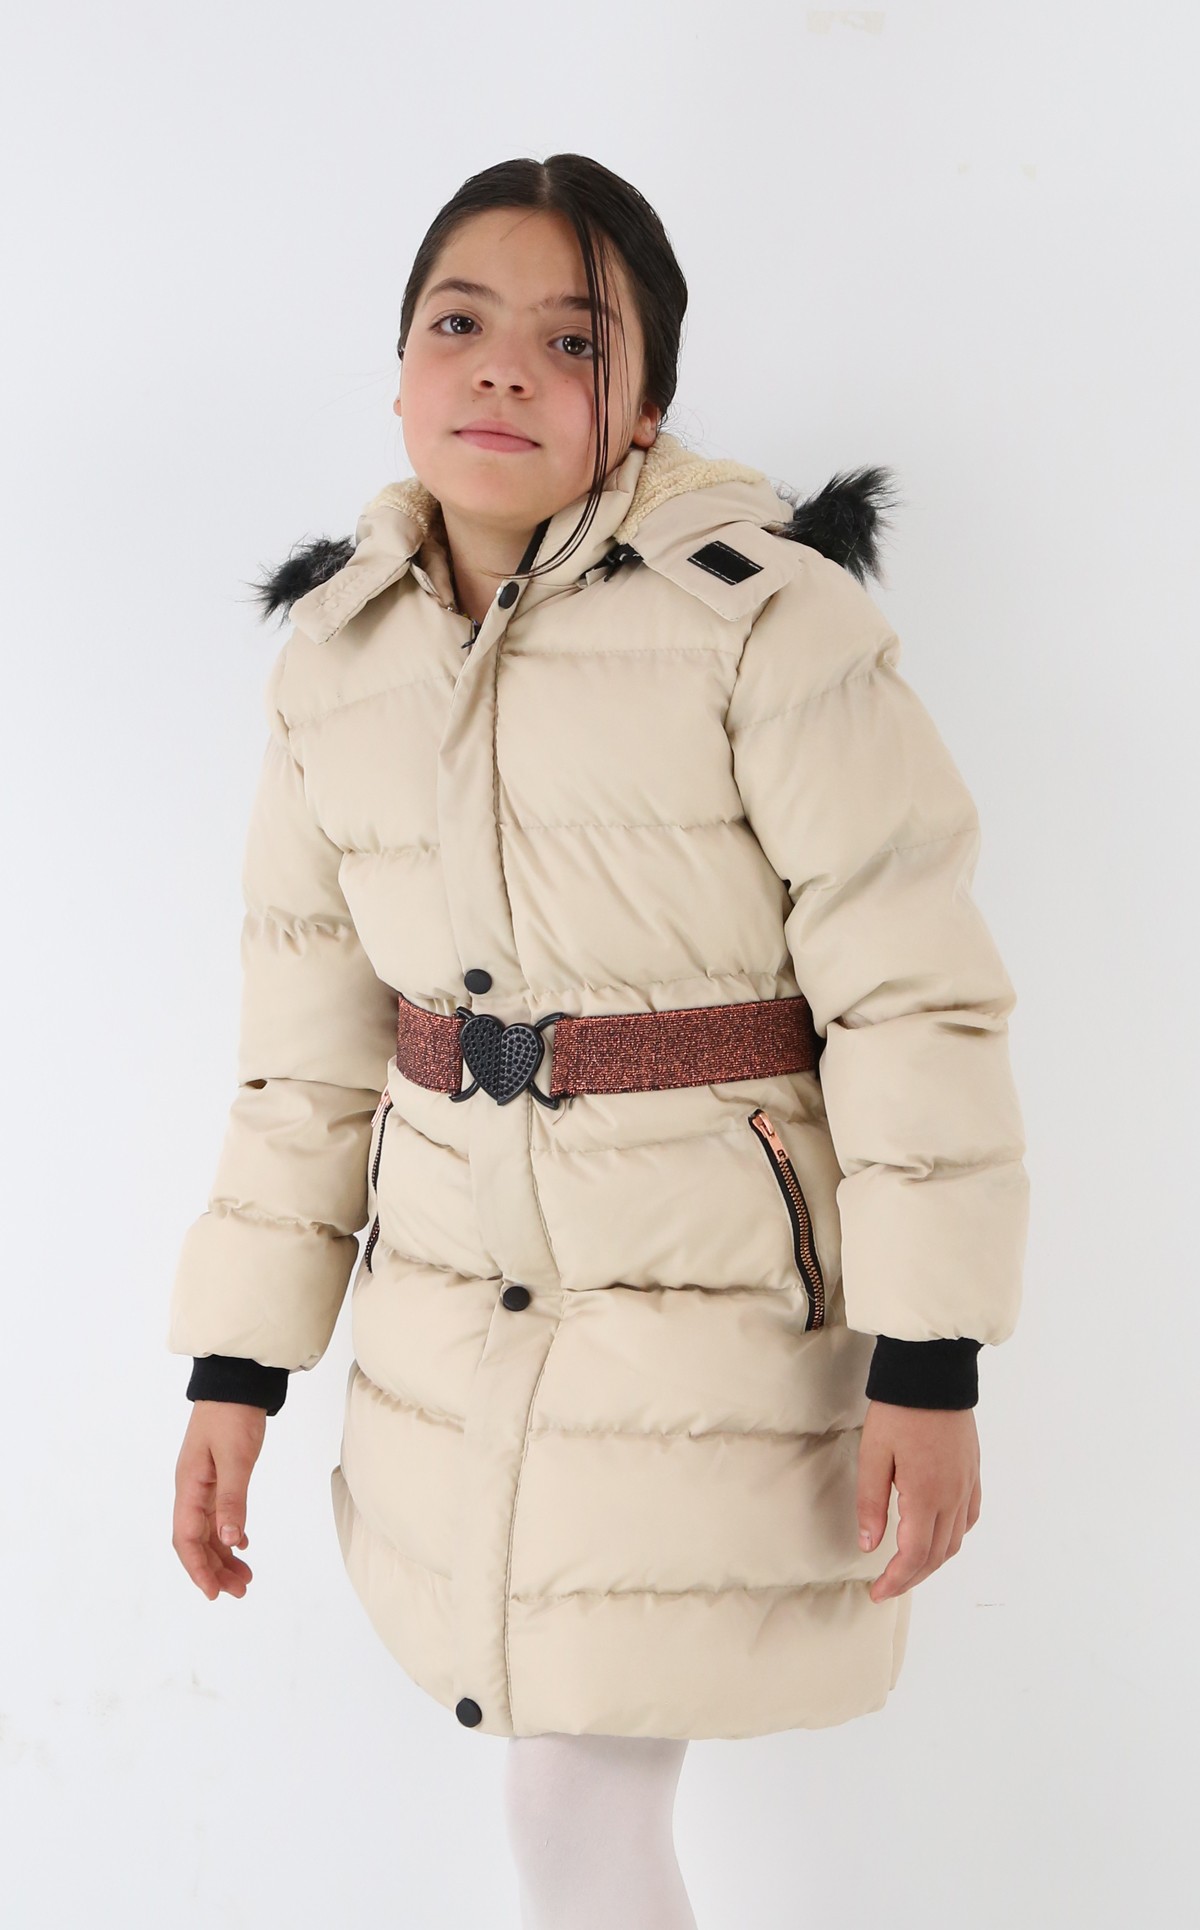 Polarlı Kışlık Kız Çocuk Montu - Snowbelle - Krem